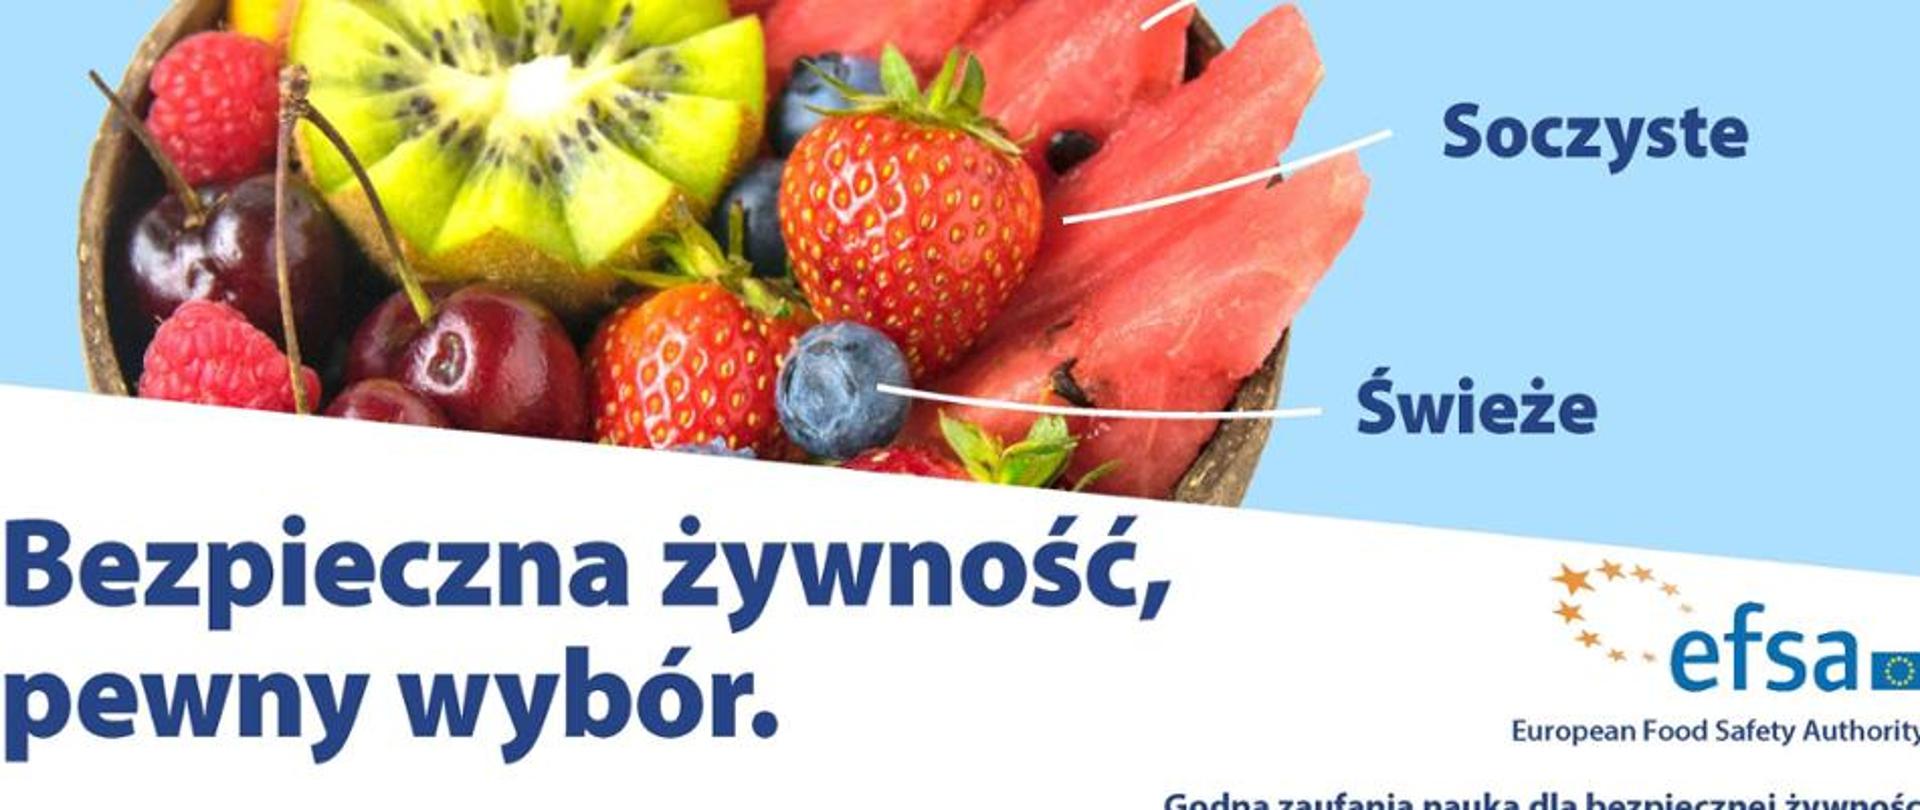 Obraz z owocami i napisem Bezpieczna żywność, pewny wybór.